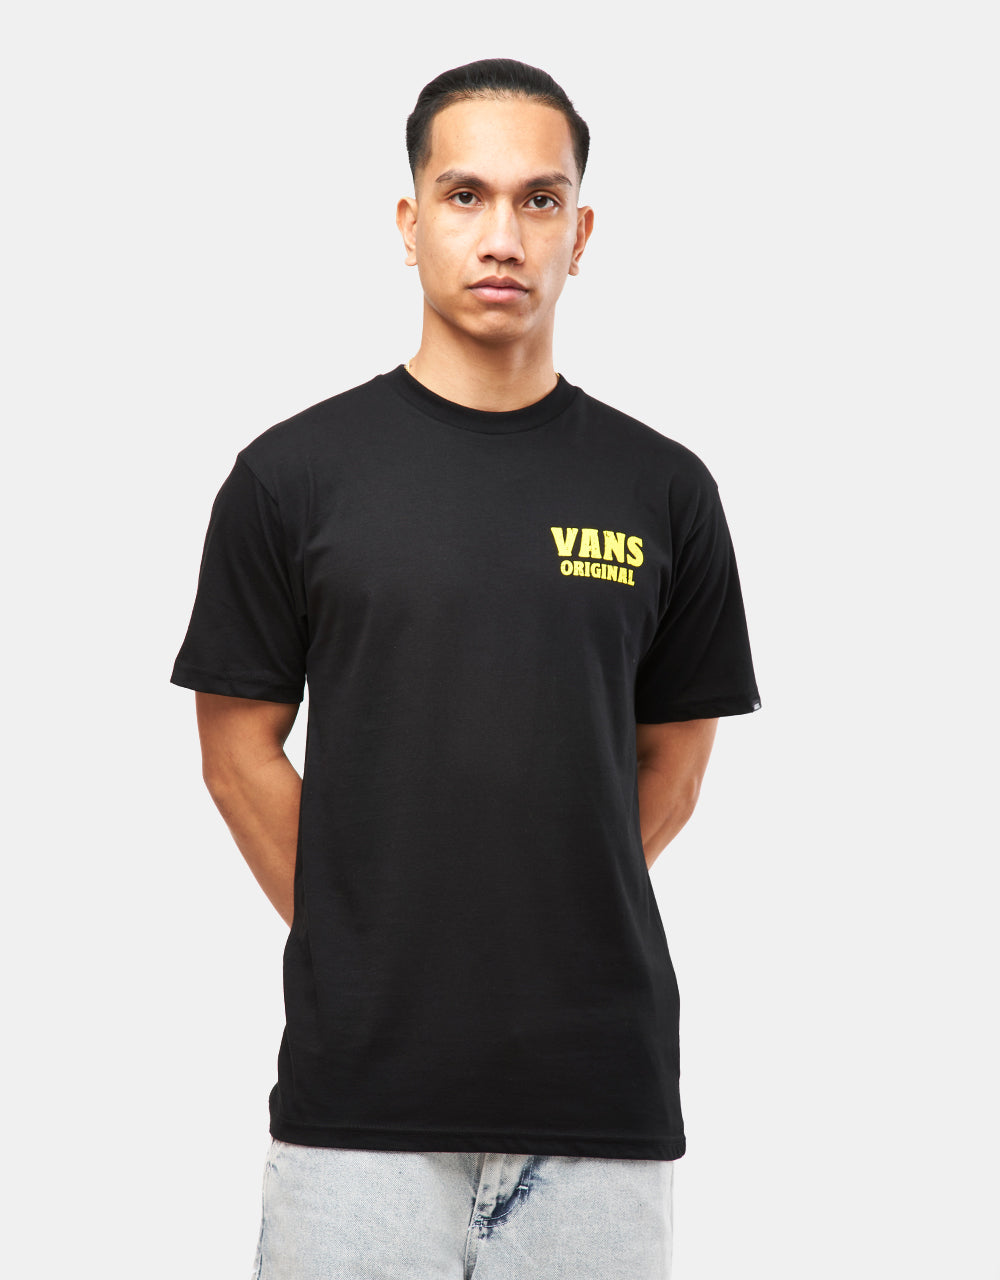 Vans Wave Cheers UK EXCLUSIVE T-Shirt - Black